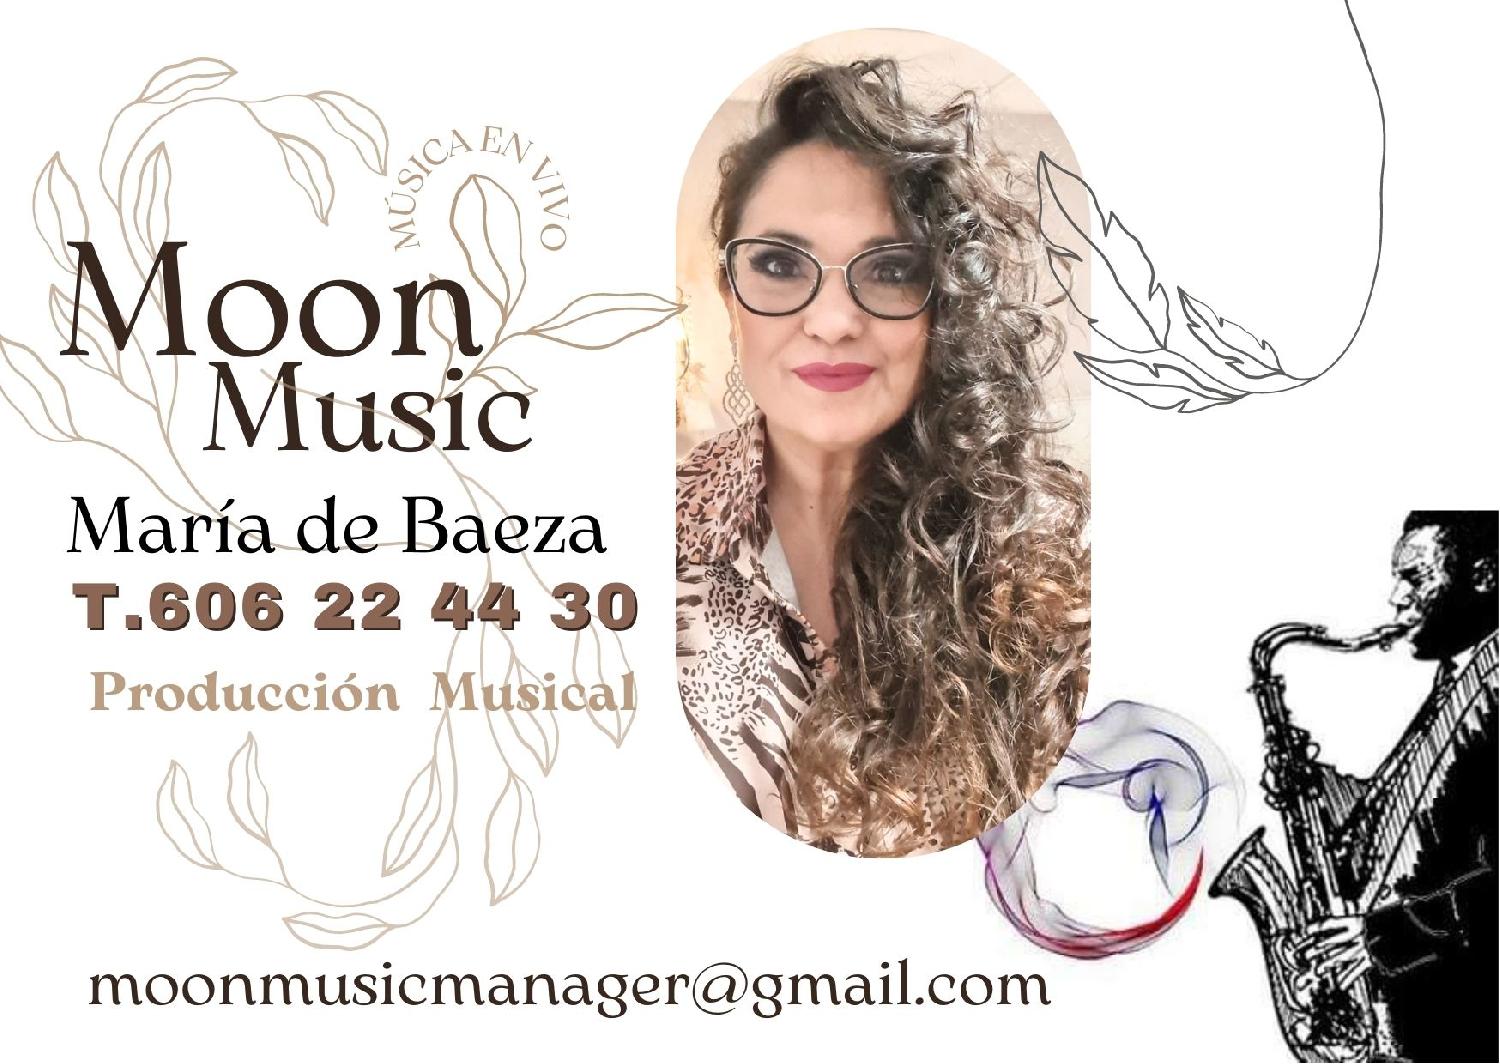 MoonMusicManager Música: Para toda la familia en Murcia